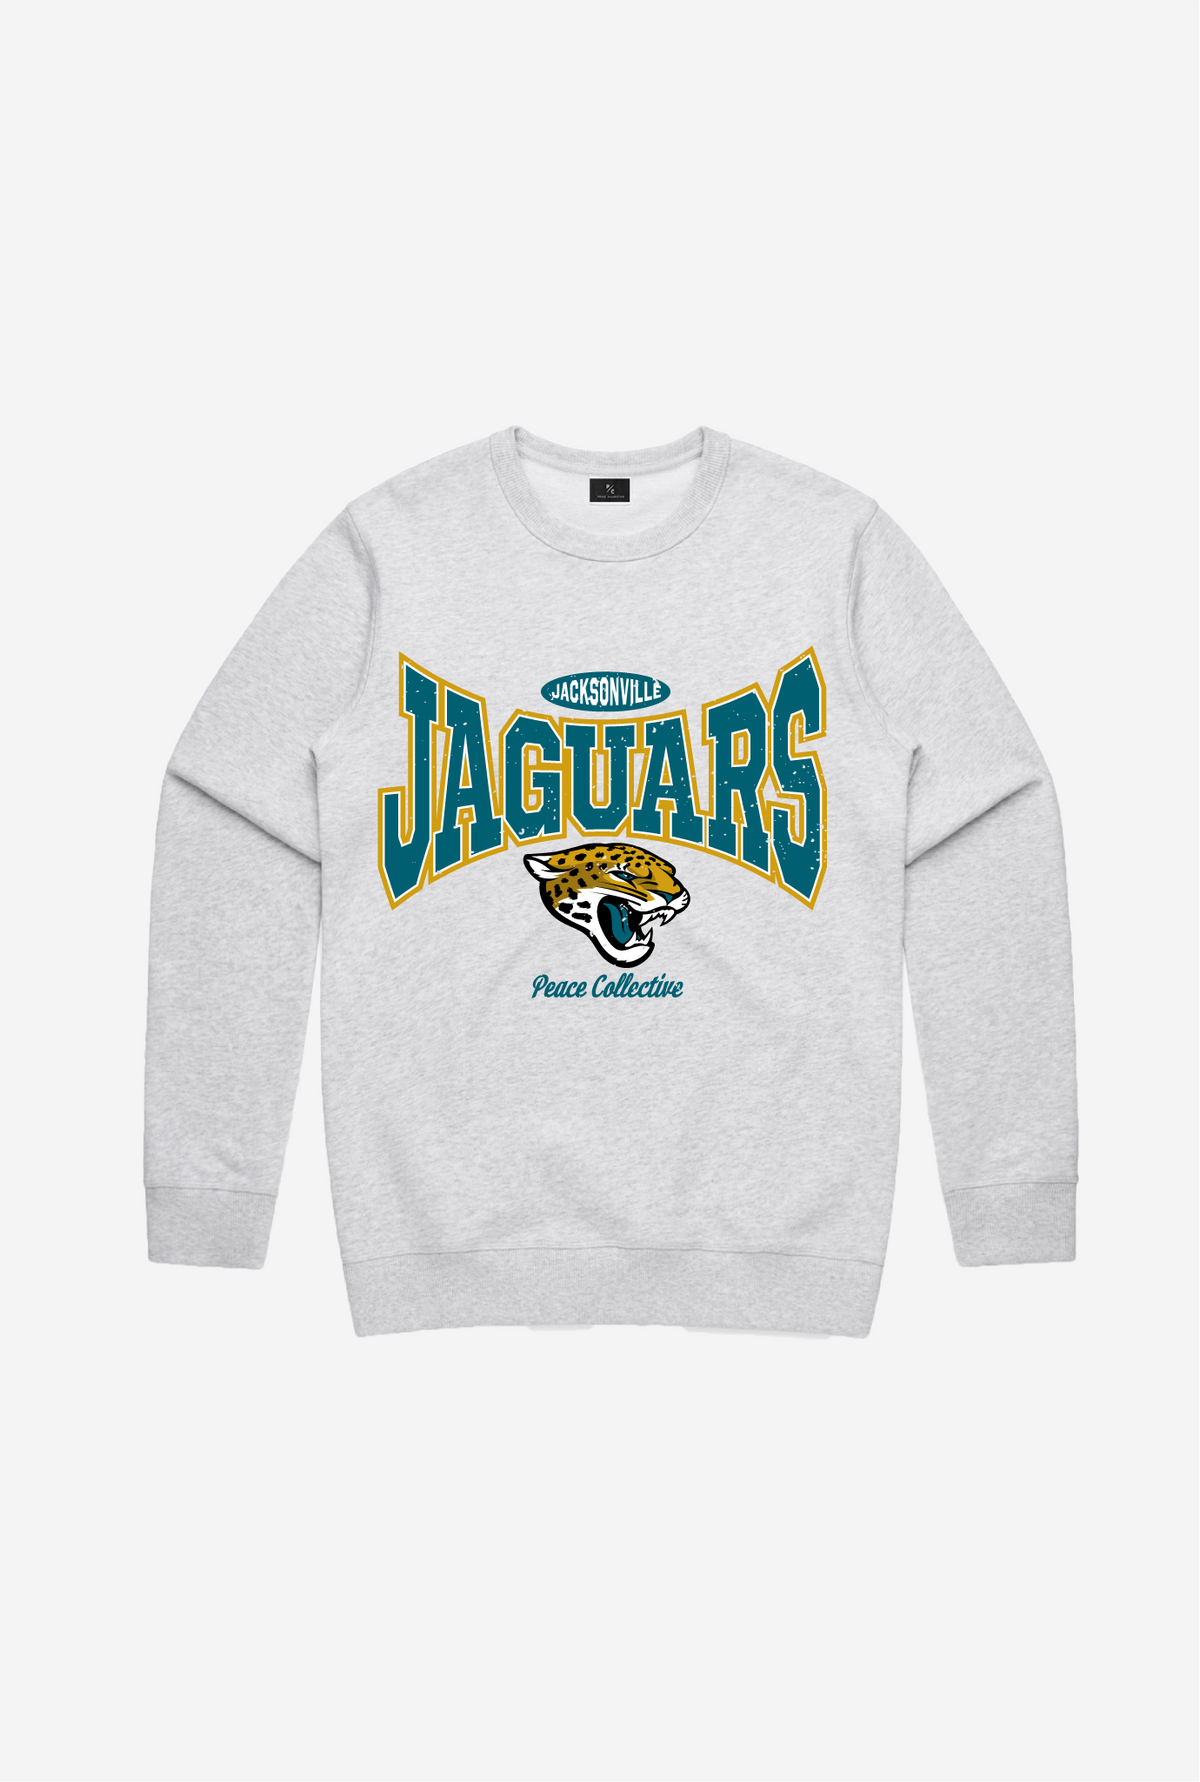 Jacksonville Jaguars Washed Graphic Crewneck - Ash